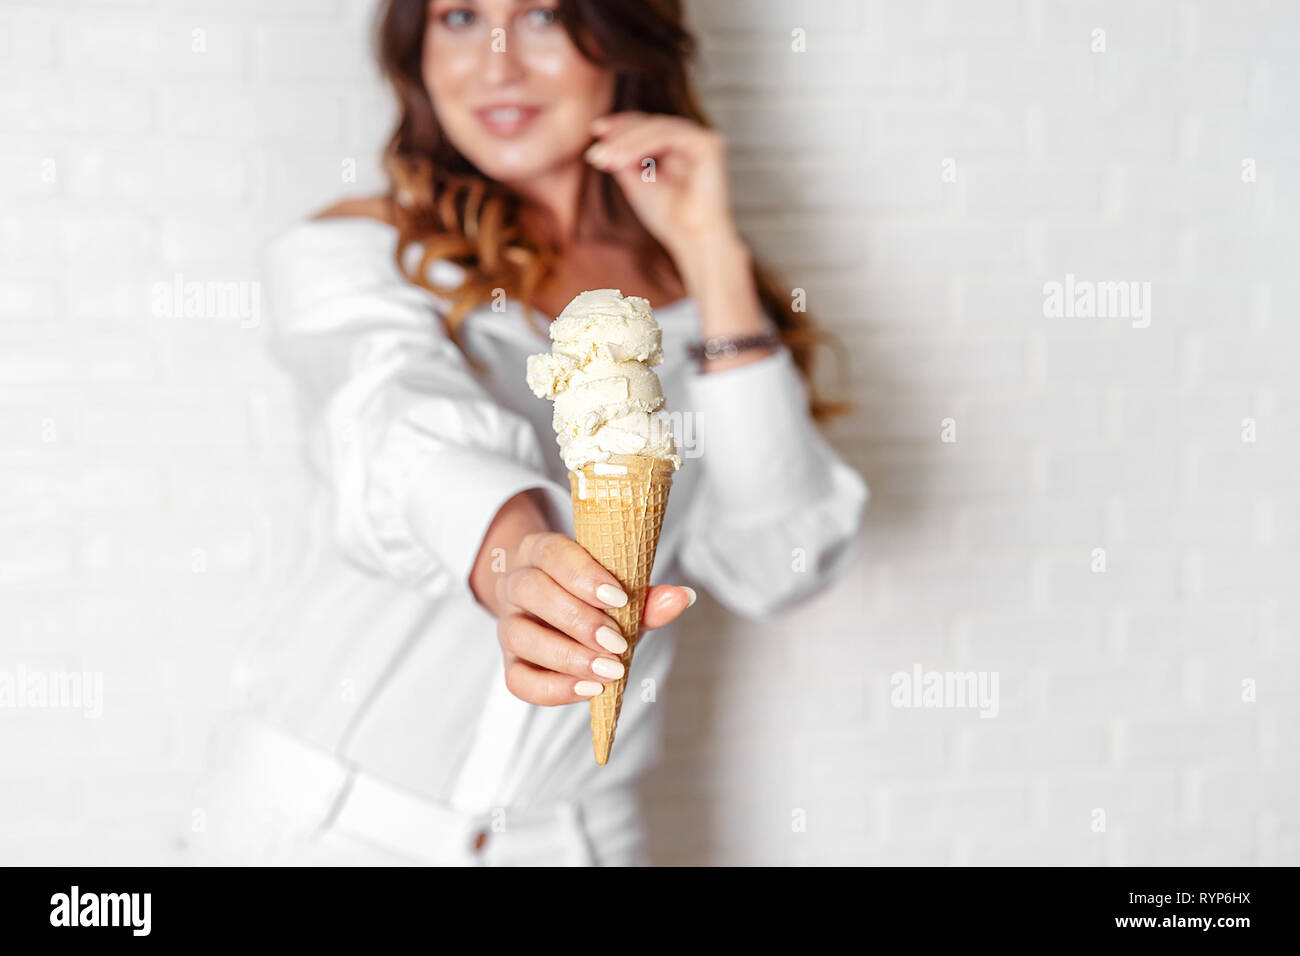 Glace vanille crème glacée dans la main de femme libre Banque D'Images